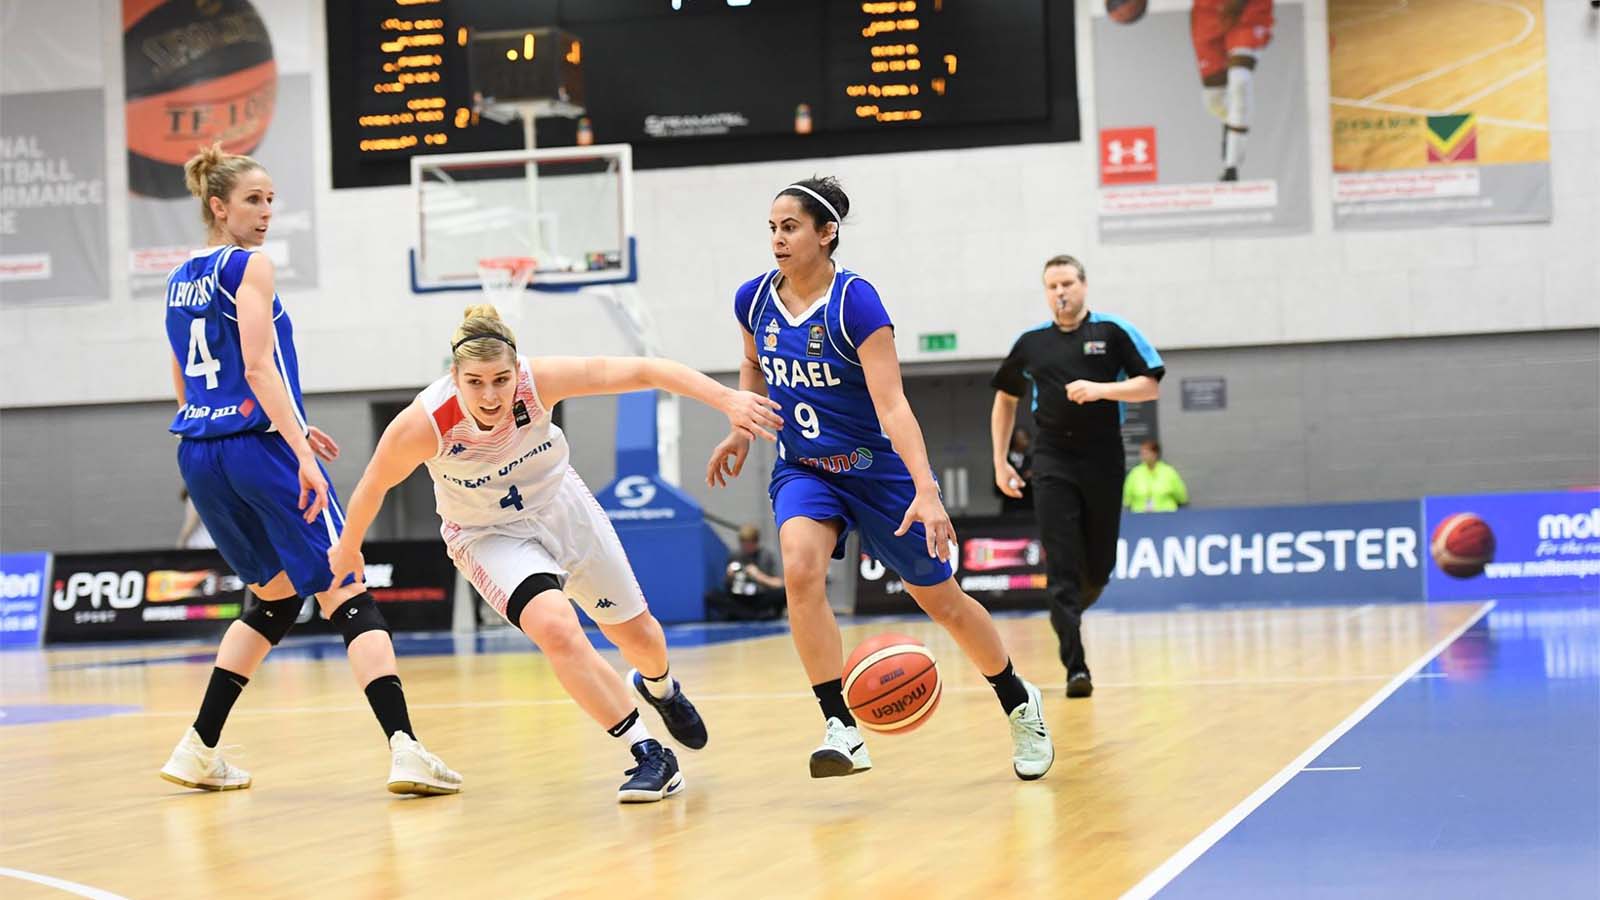 נבחרת ישראל מול נבחרת בריטניה בכדורסל נשים (איגוד הכדורסל בישראל)